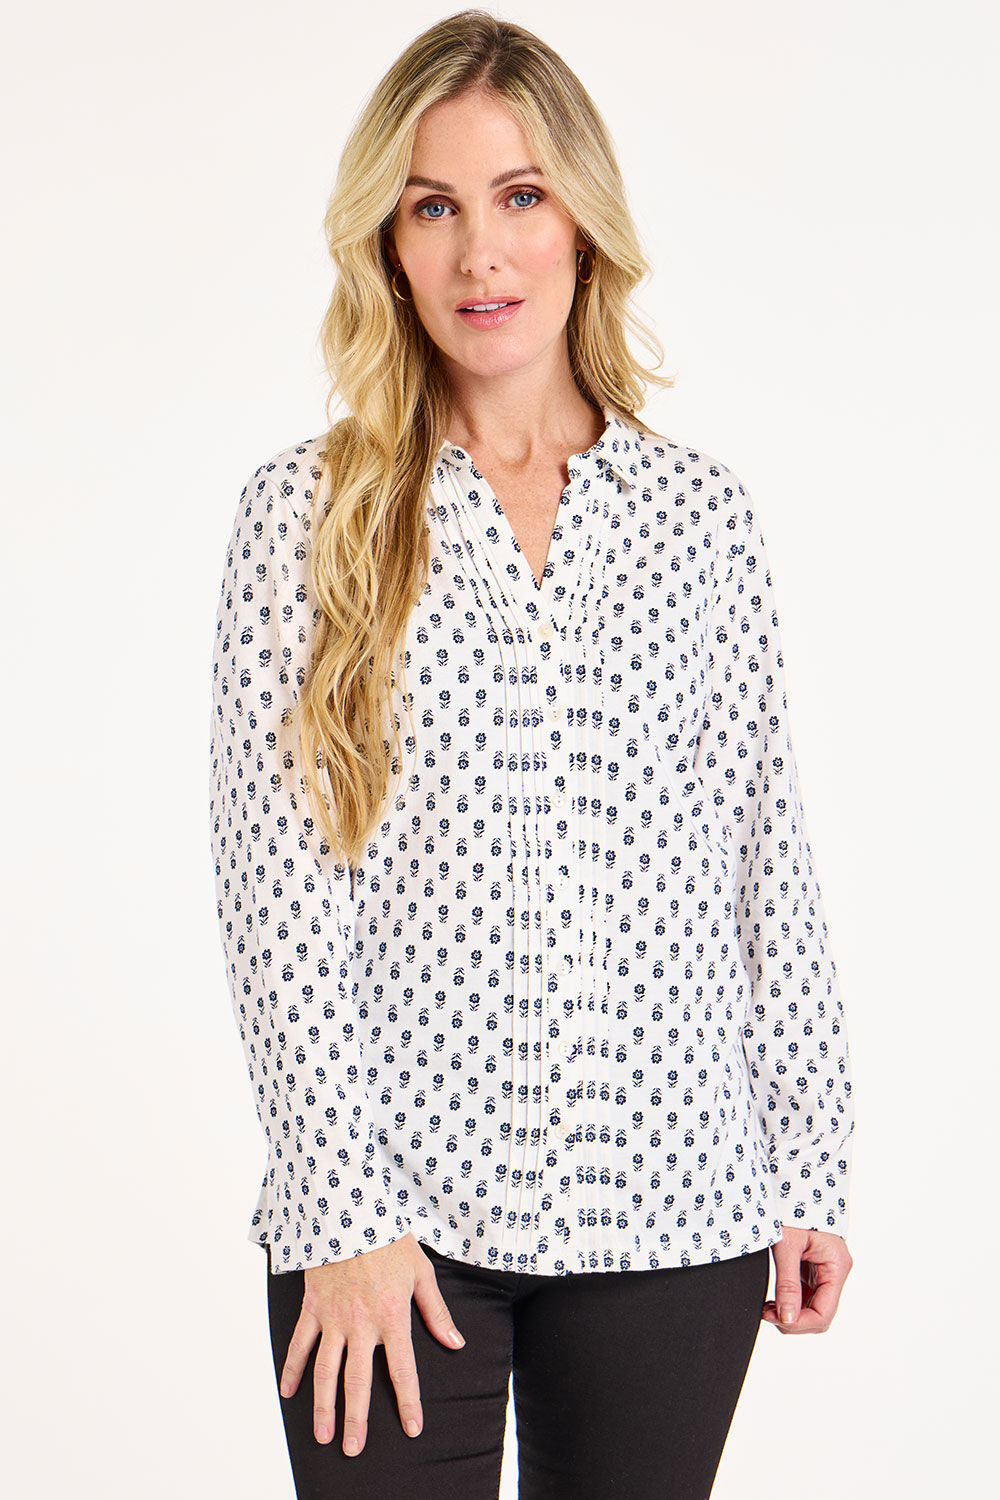 Bonmarche White/grey Long Sleeve Floral Foulard Print Jersey Shirt, Size: 14